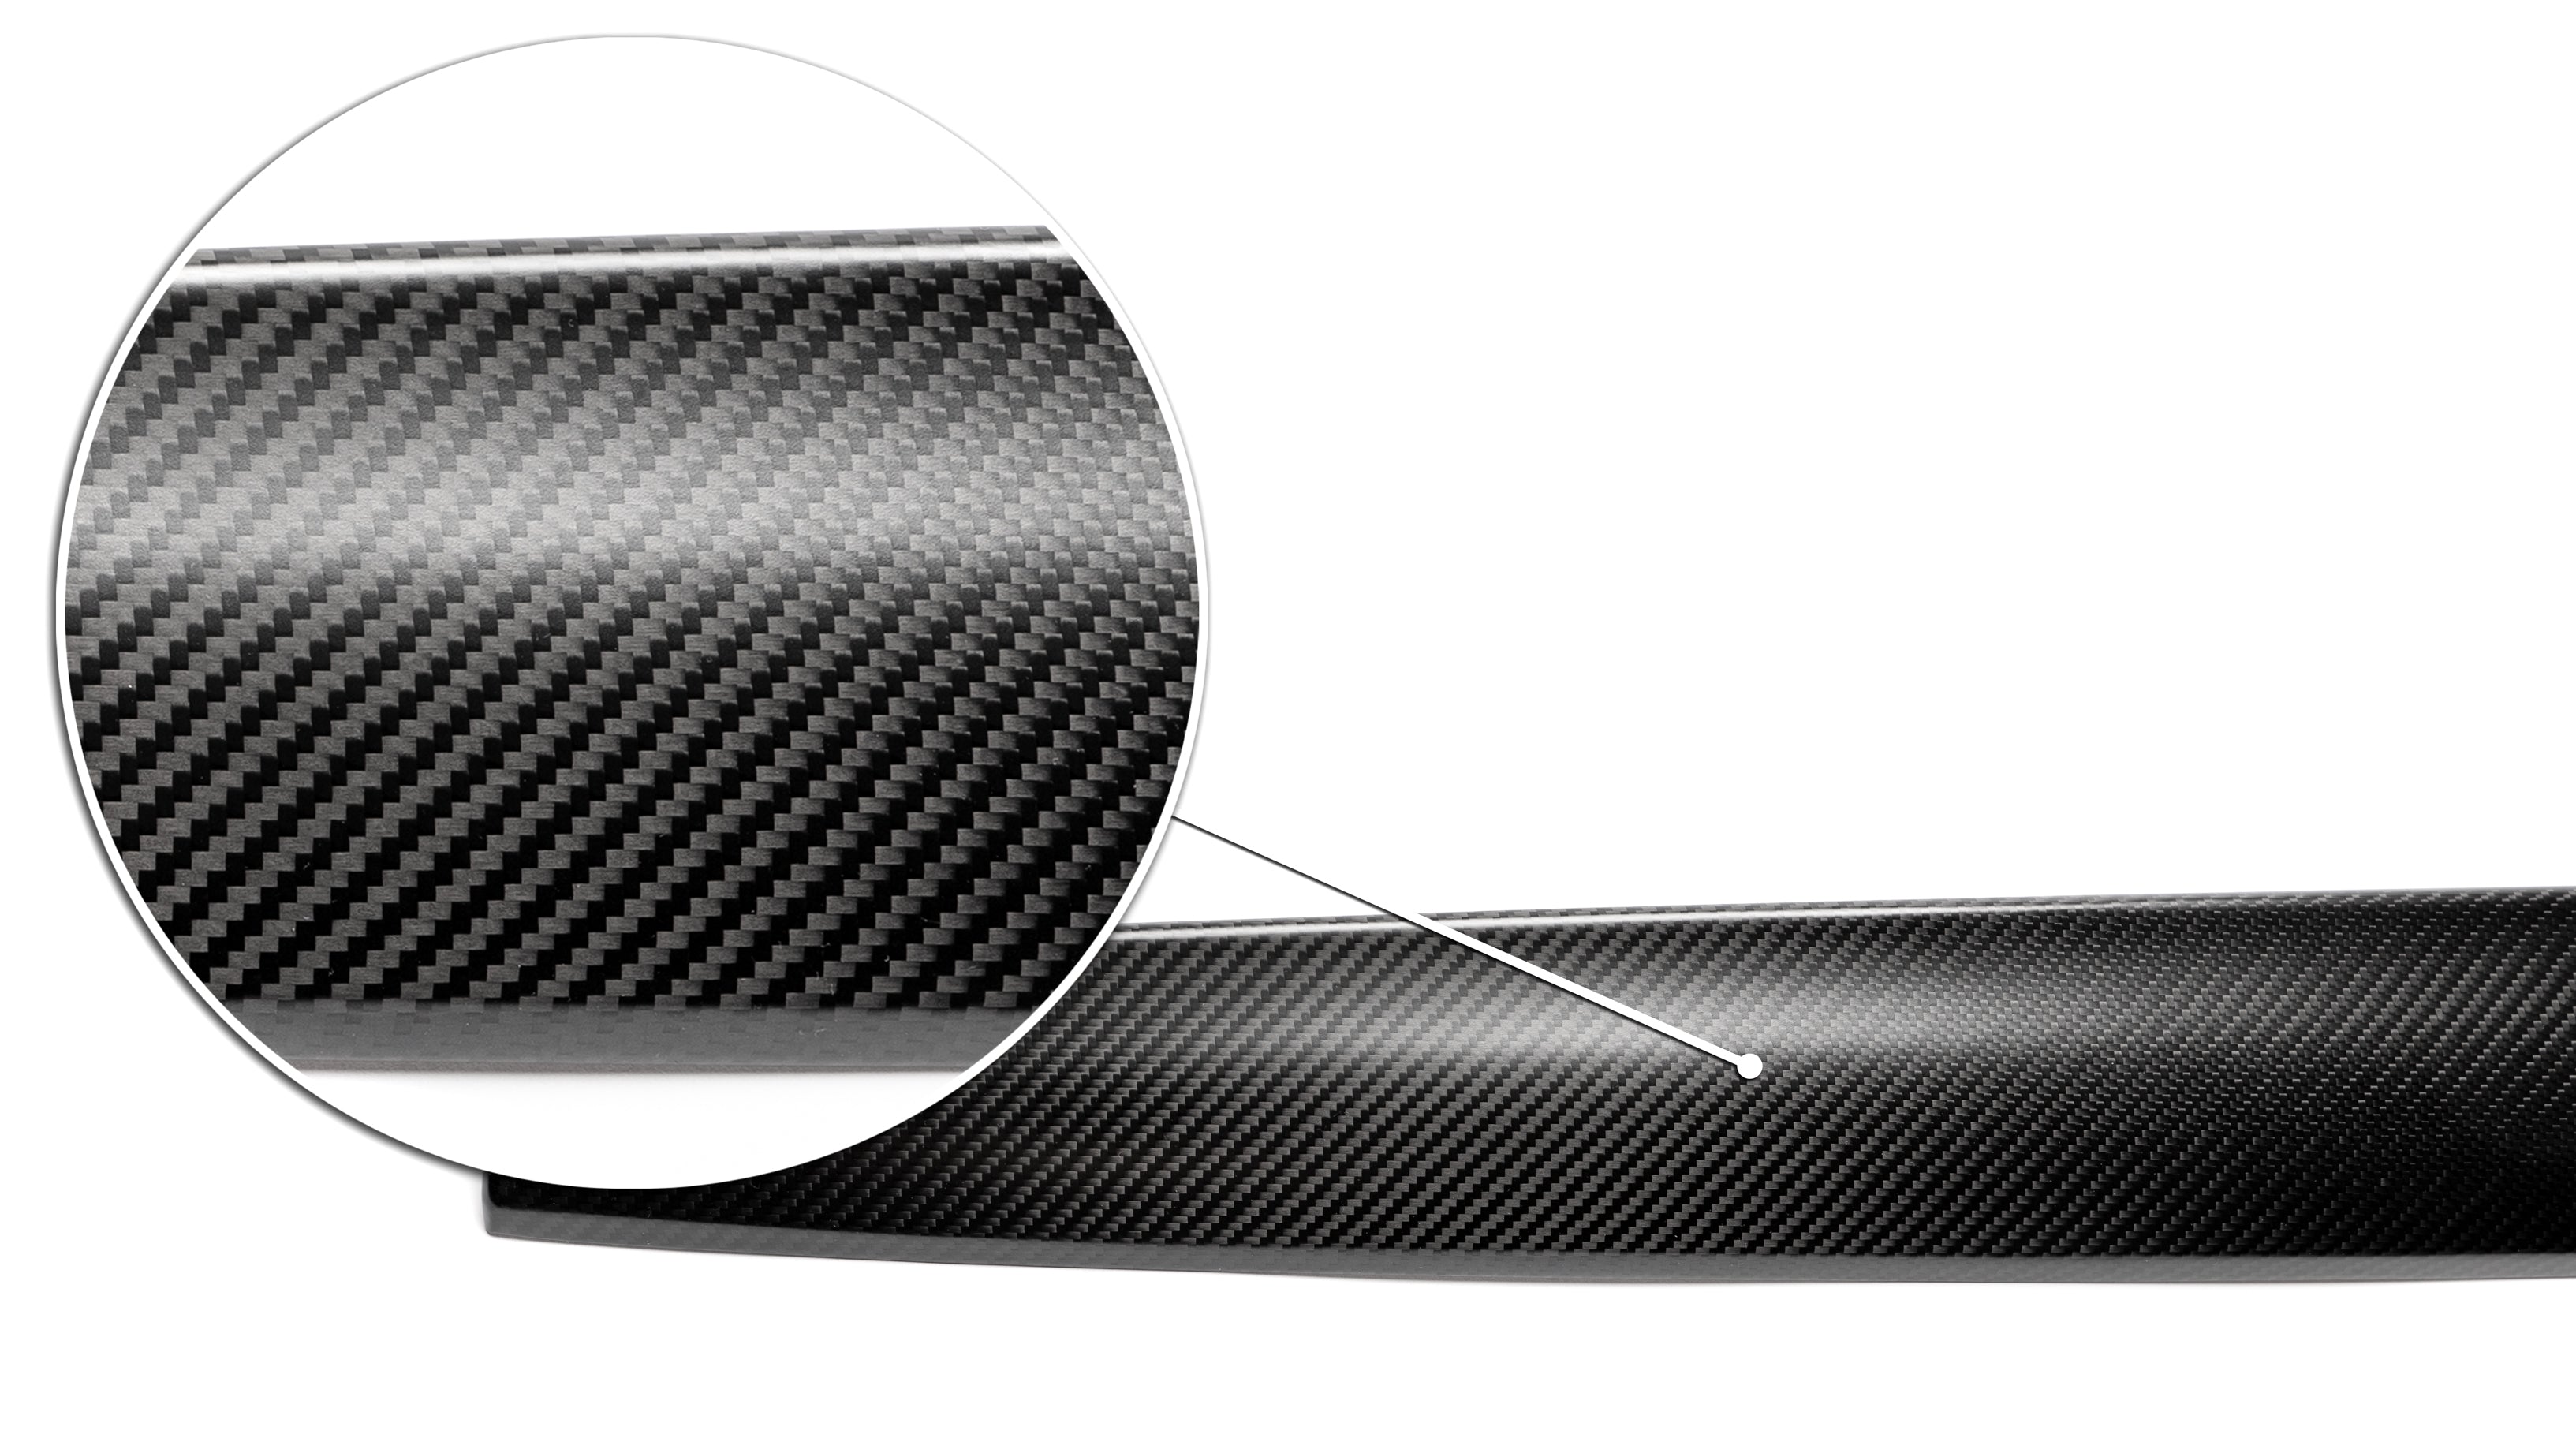 Verleihe deinem Tesla Interieur ein sportliches Ambiente mit den Echt-Carbon Dashboardleisten! - Shop4Tesla